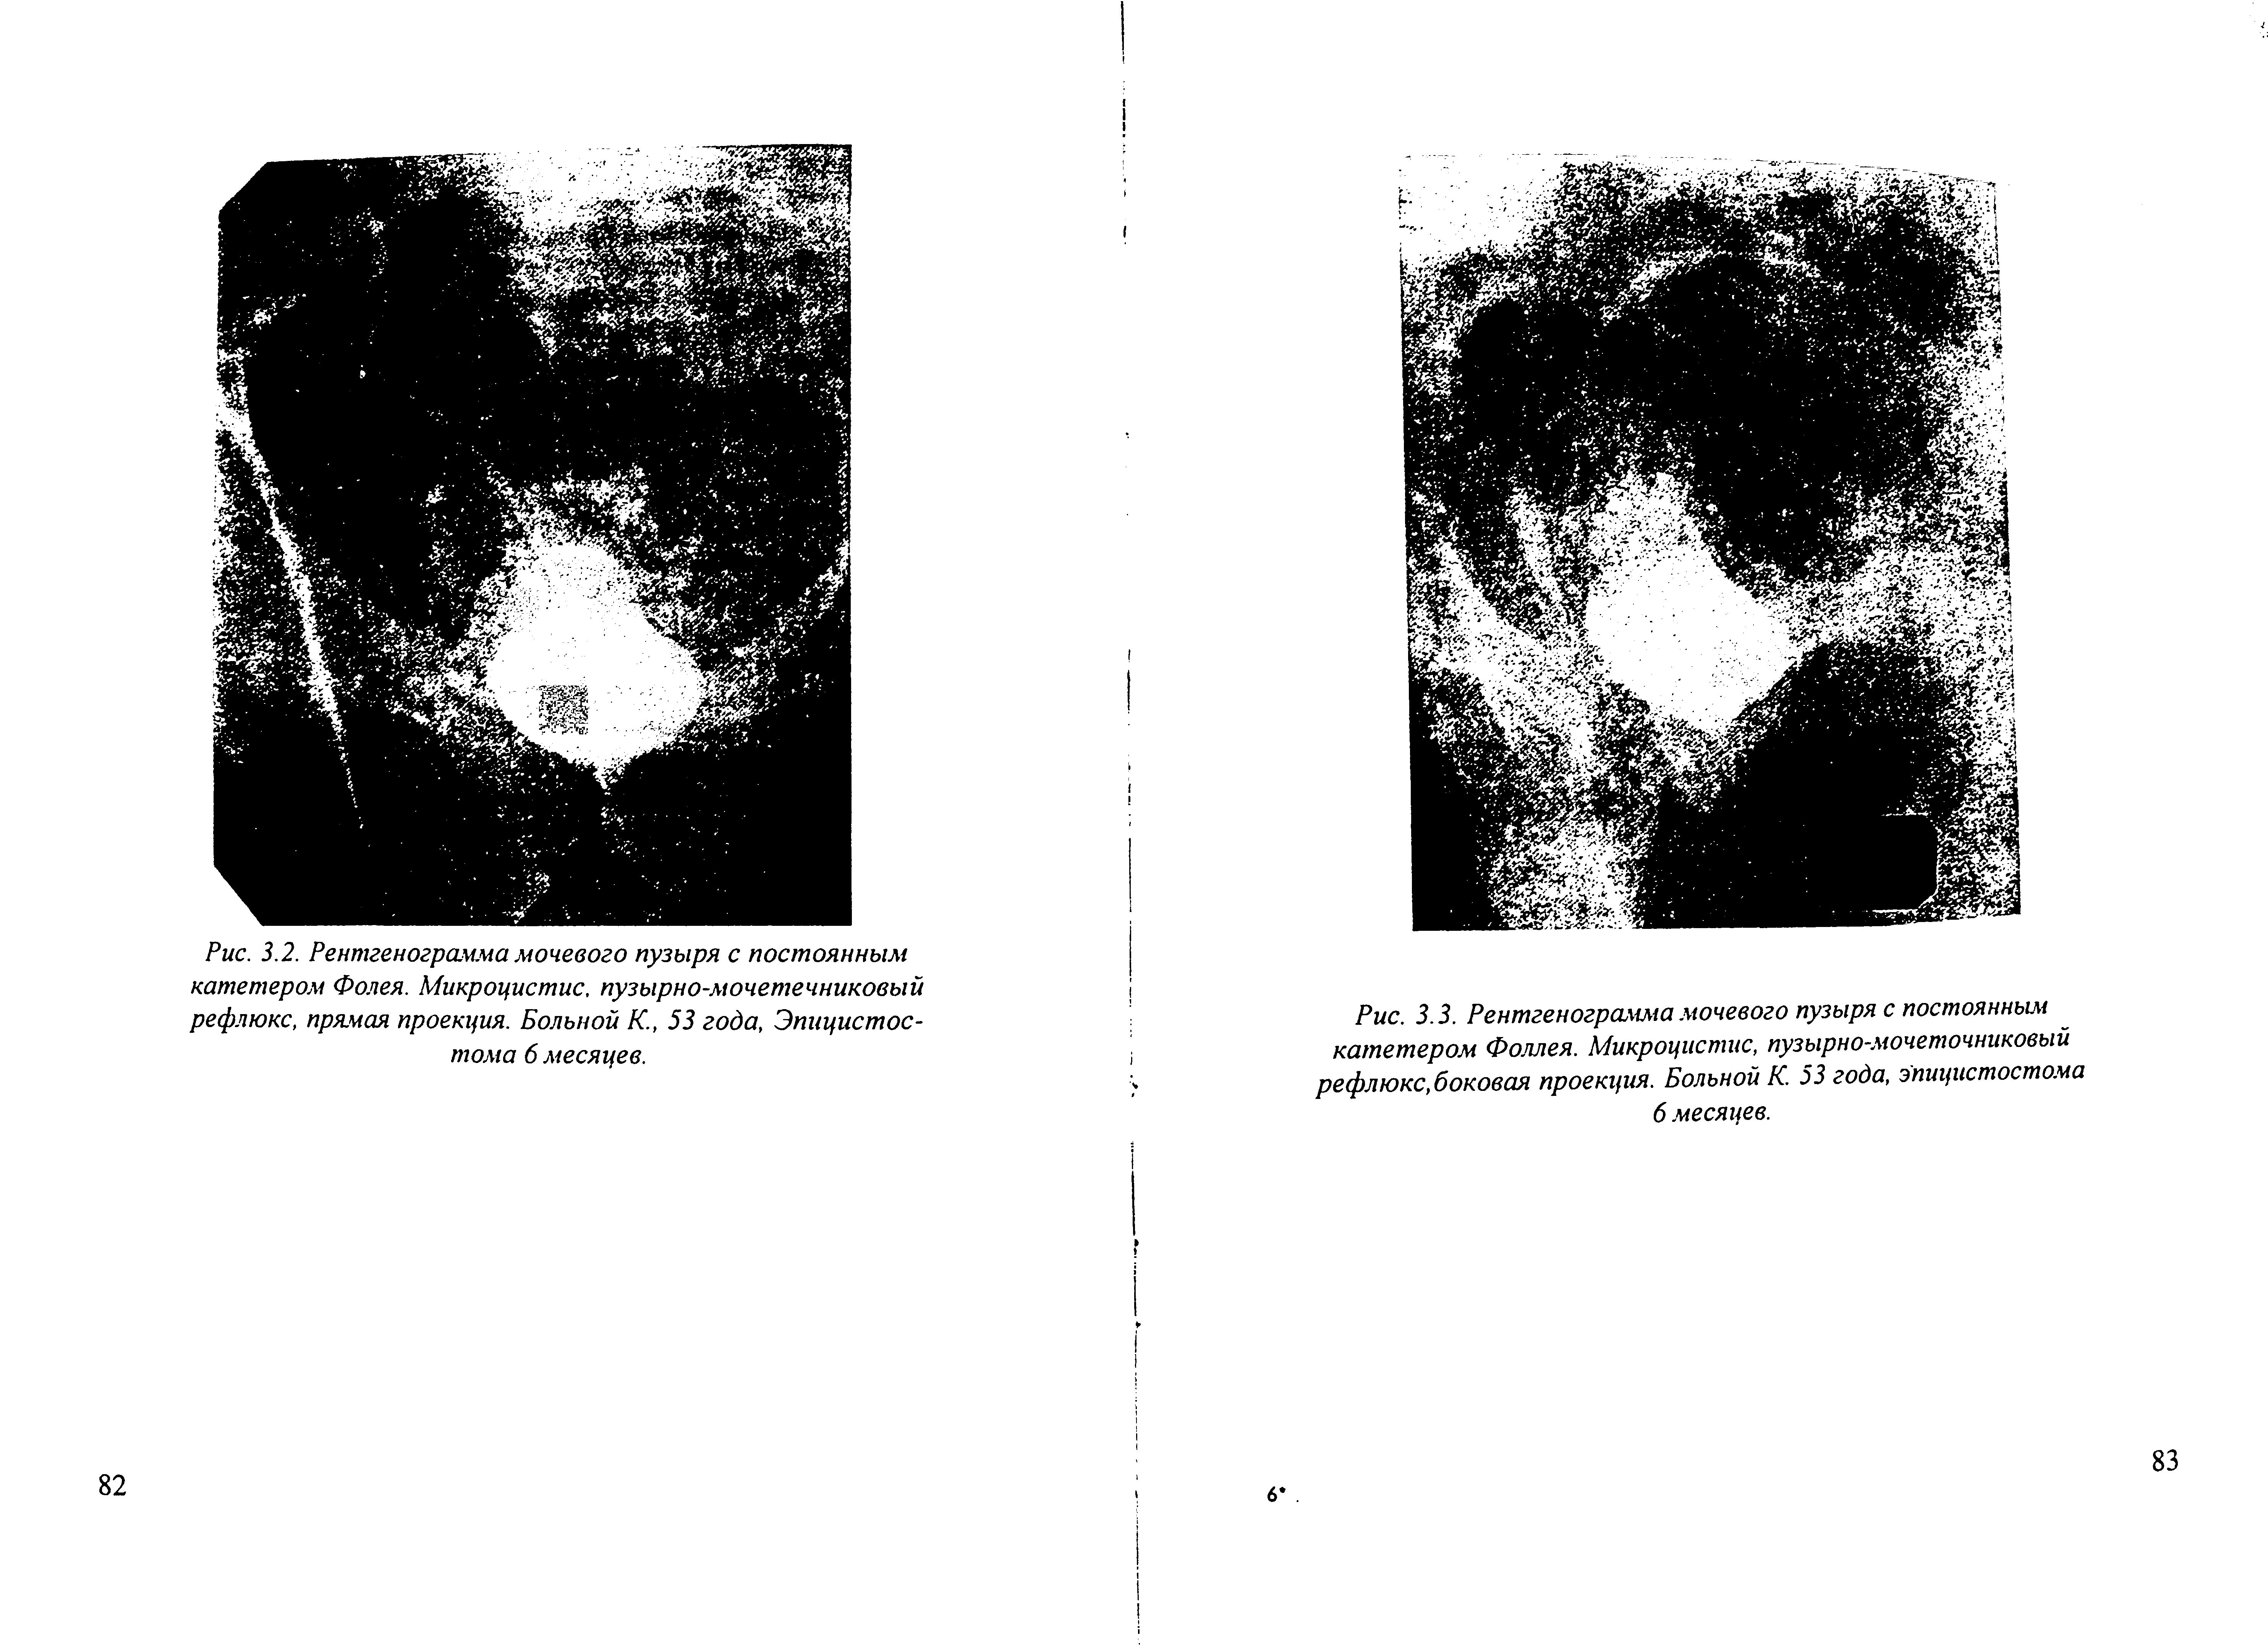 Рис. 3.2. Рентгенограмма мочевого пузыря с постоянным катетером Фолея. Микроцистис, пузырно-мочетечниковый рефлюкс, прямая проекция. Больной К., 53 года, Эпицистос-тома 6 месяцев.